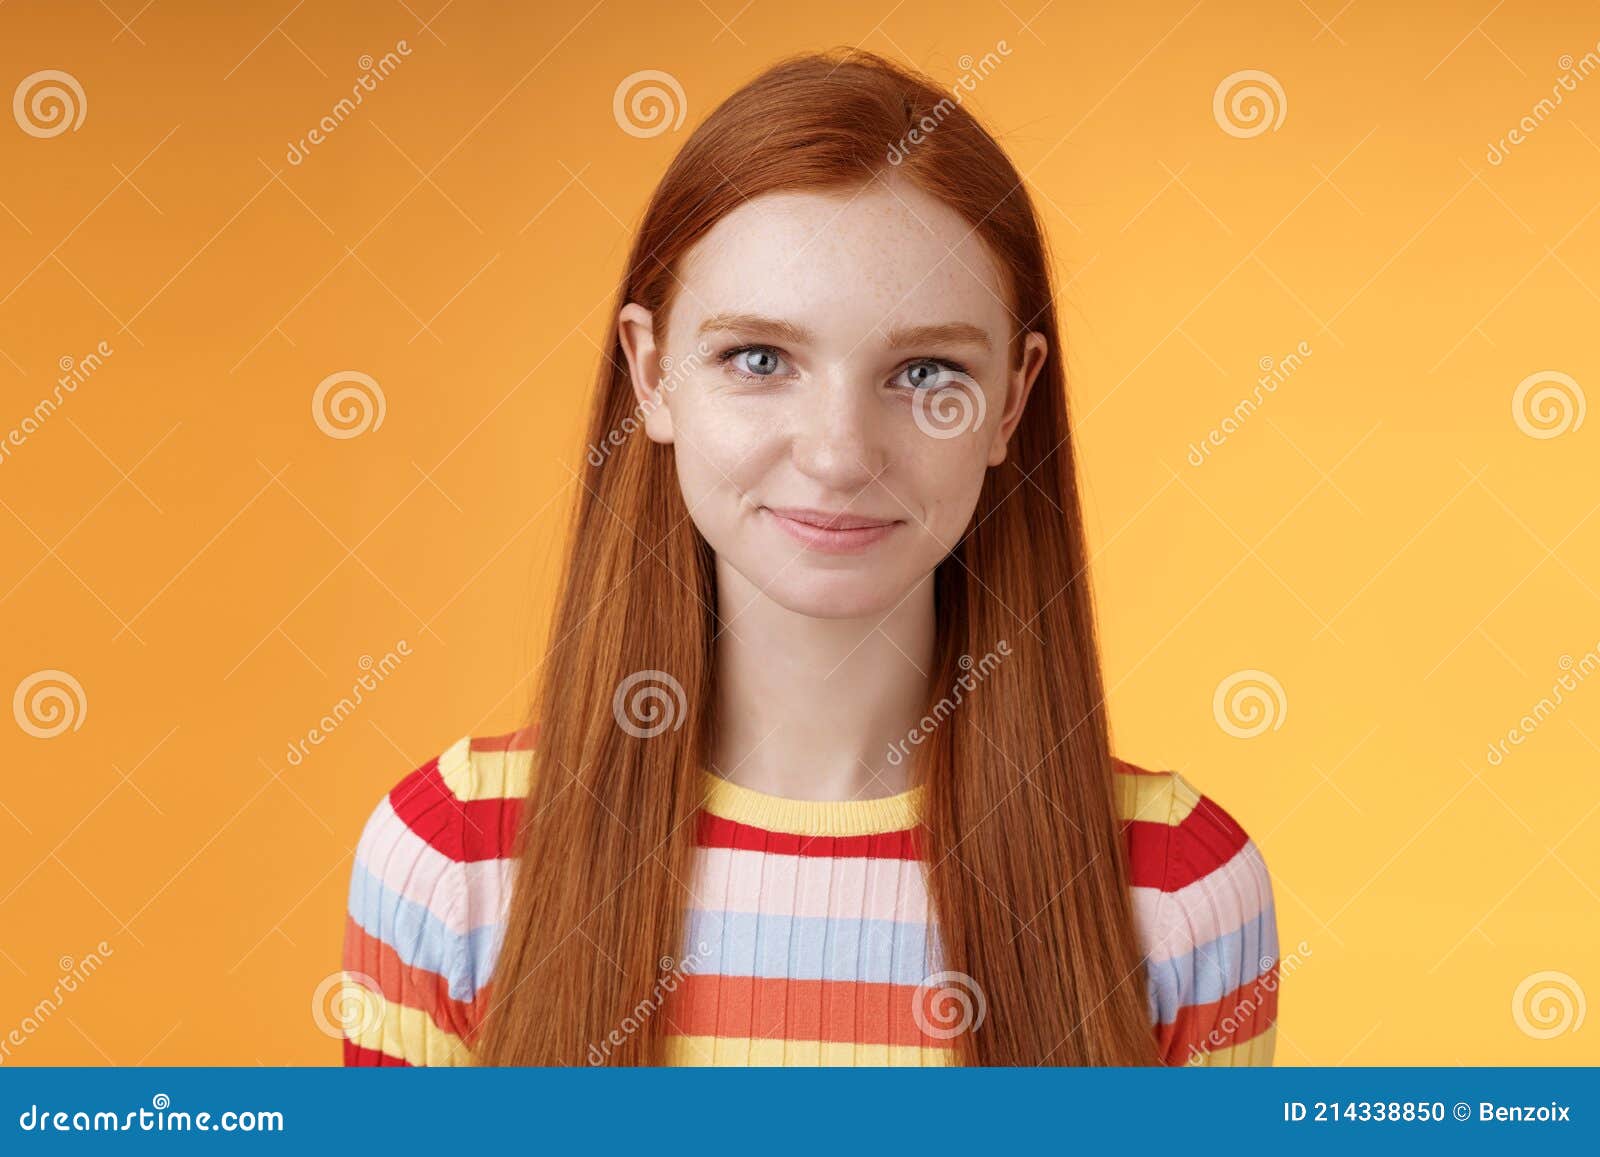 redhead teen girl self